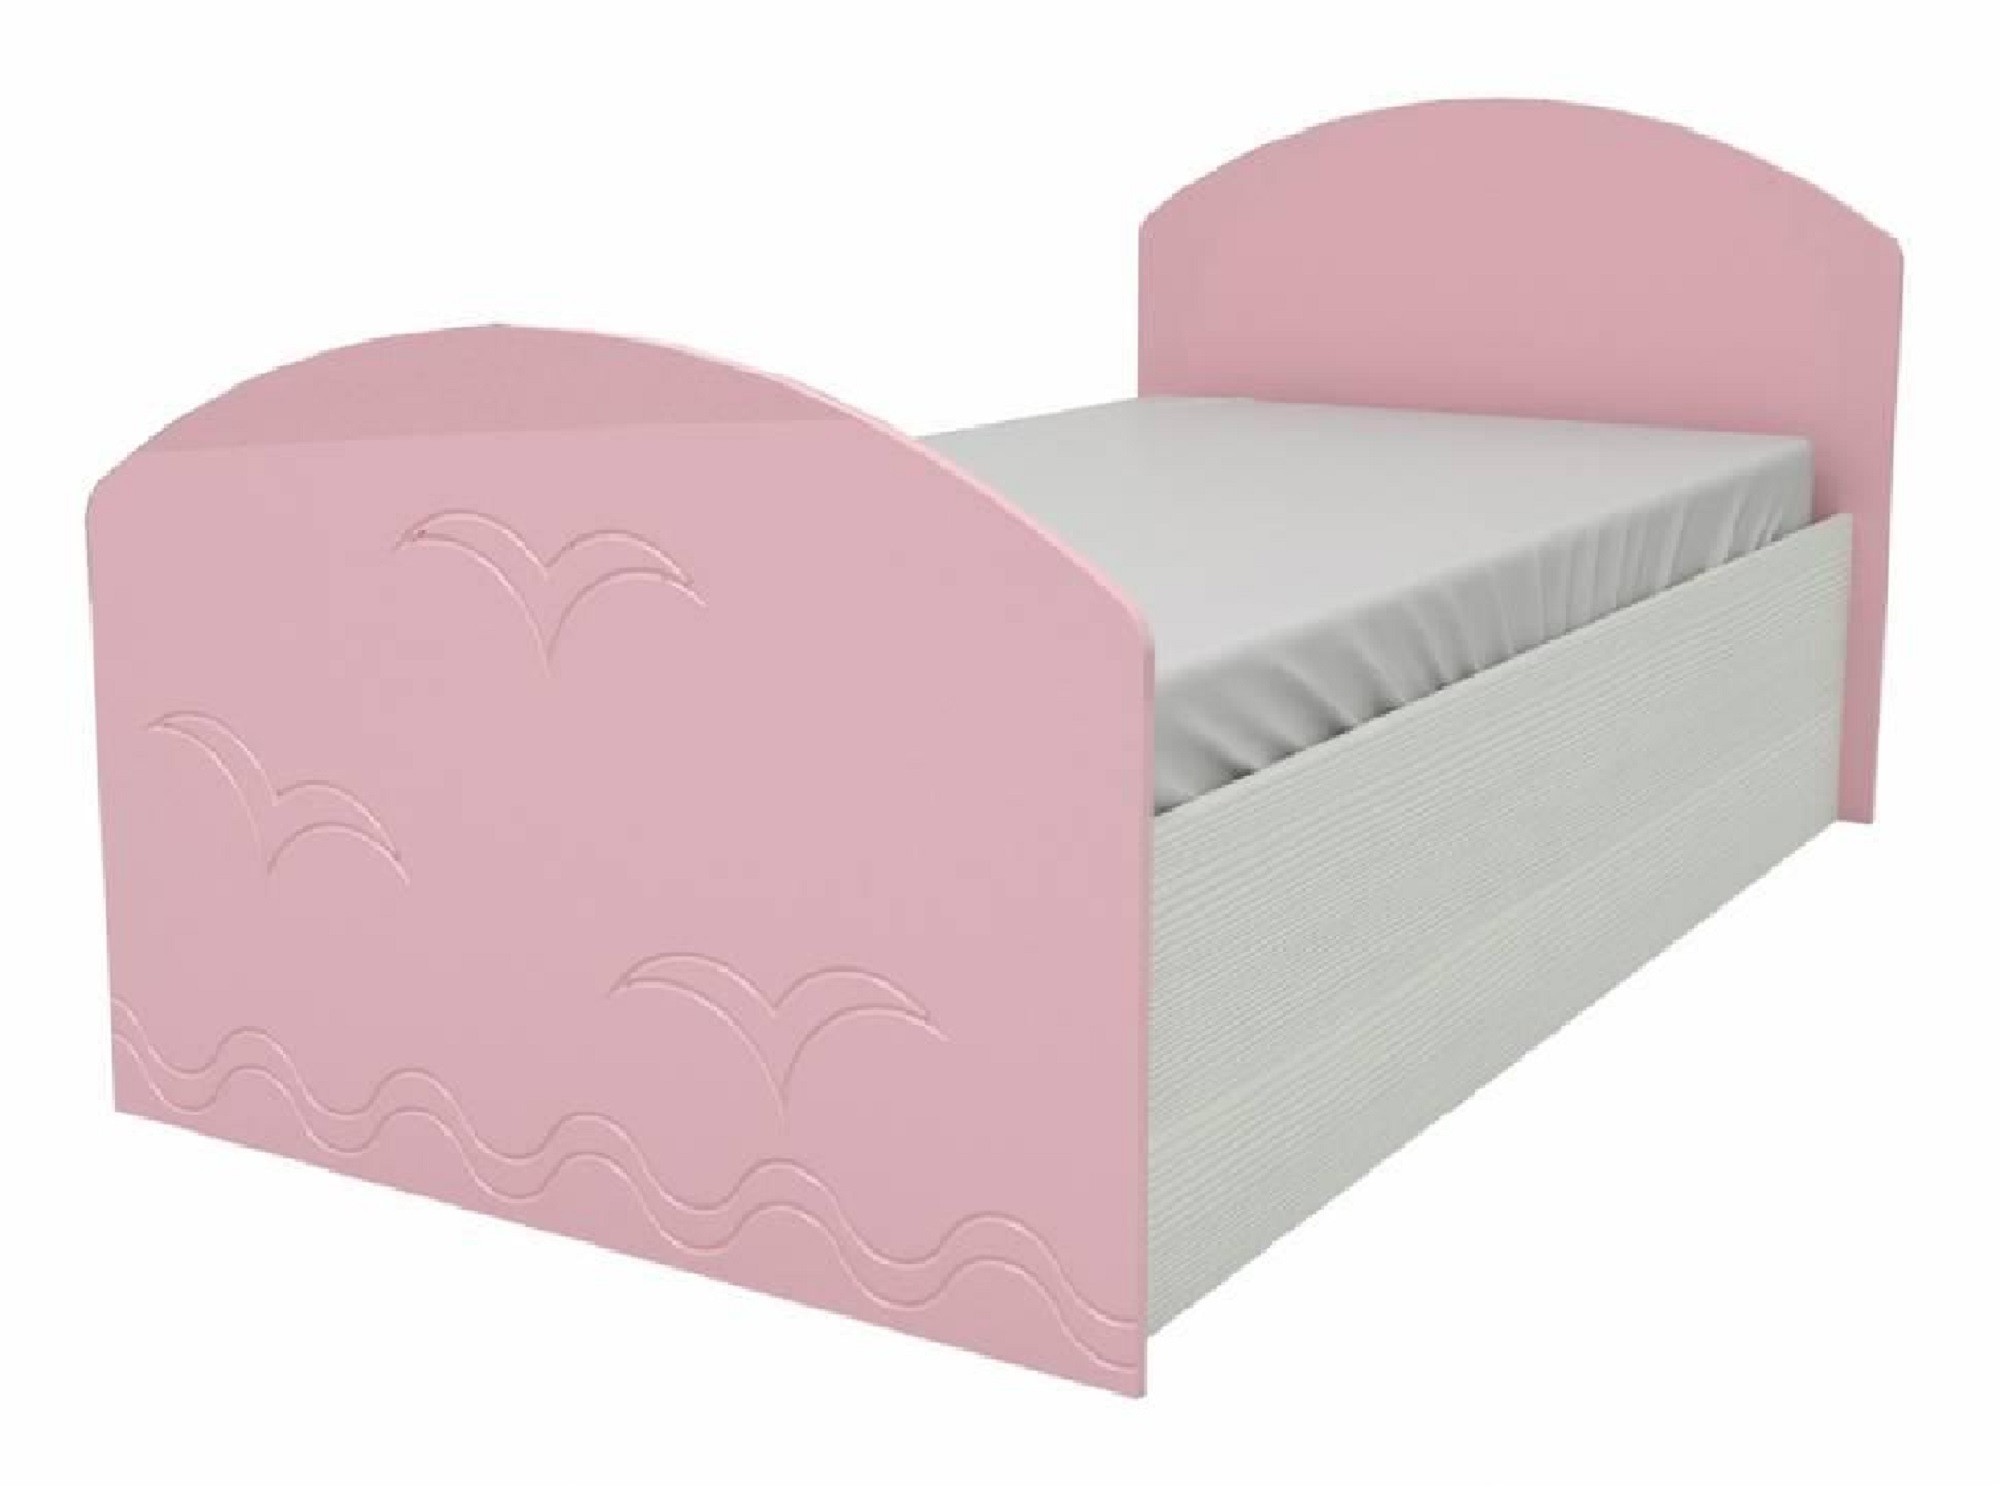 Юниор-2 Детская кровать 80, металлик (Розовый металлик, Дуб белёный) Розовый металлик, МДФ, ЛДСП юниор 2 стенка металлик розовый металлик дуб белёный дуб белёный мдф лдсп